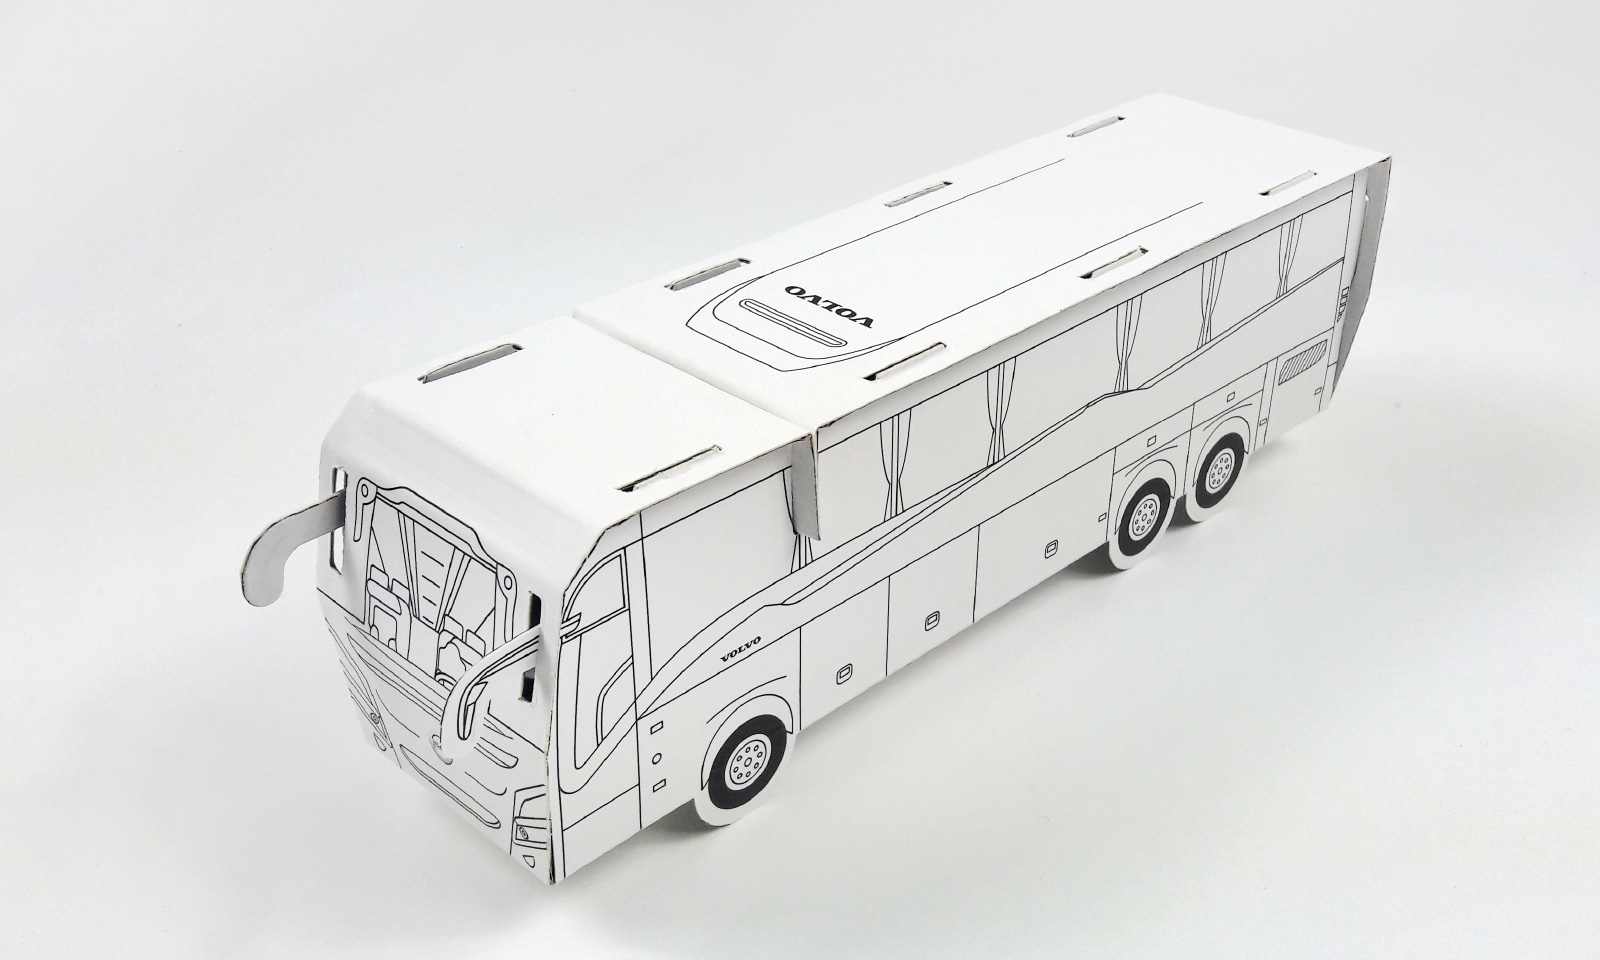 Model 3D – autobus